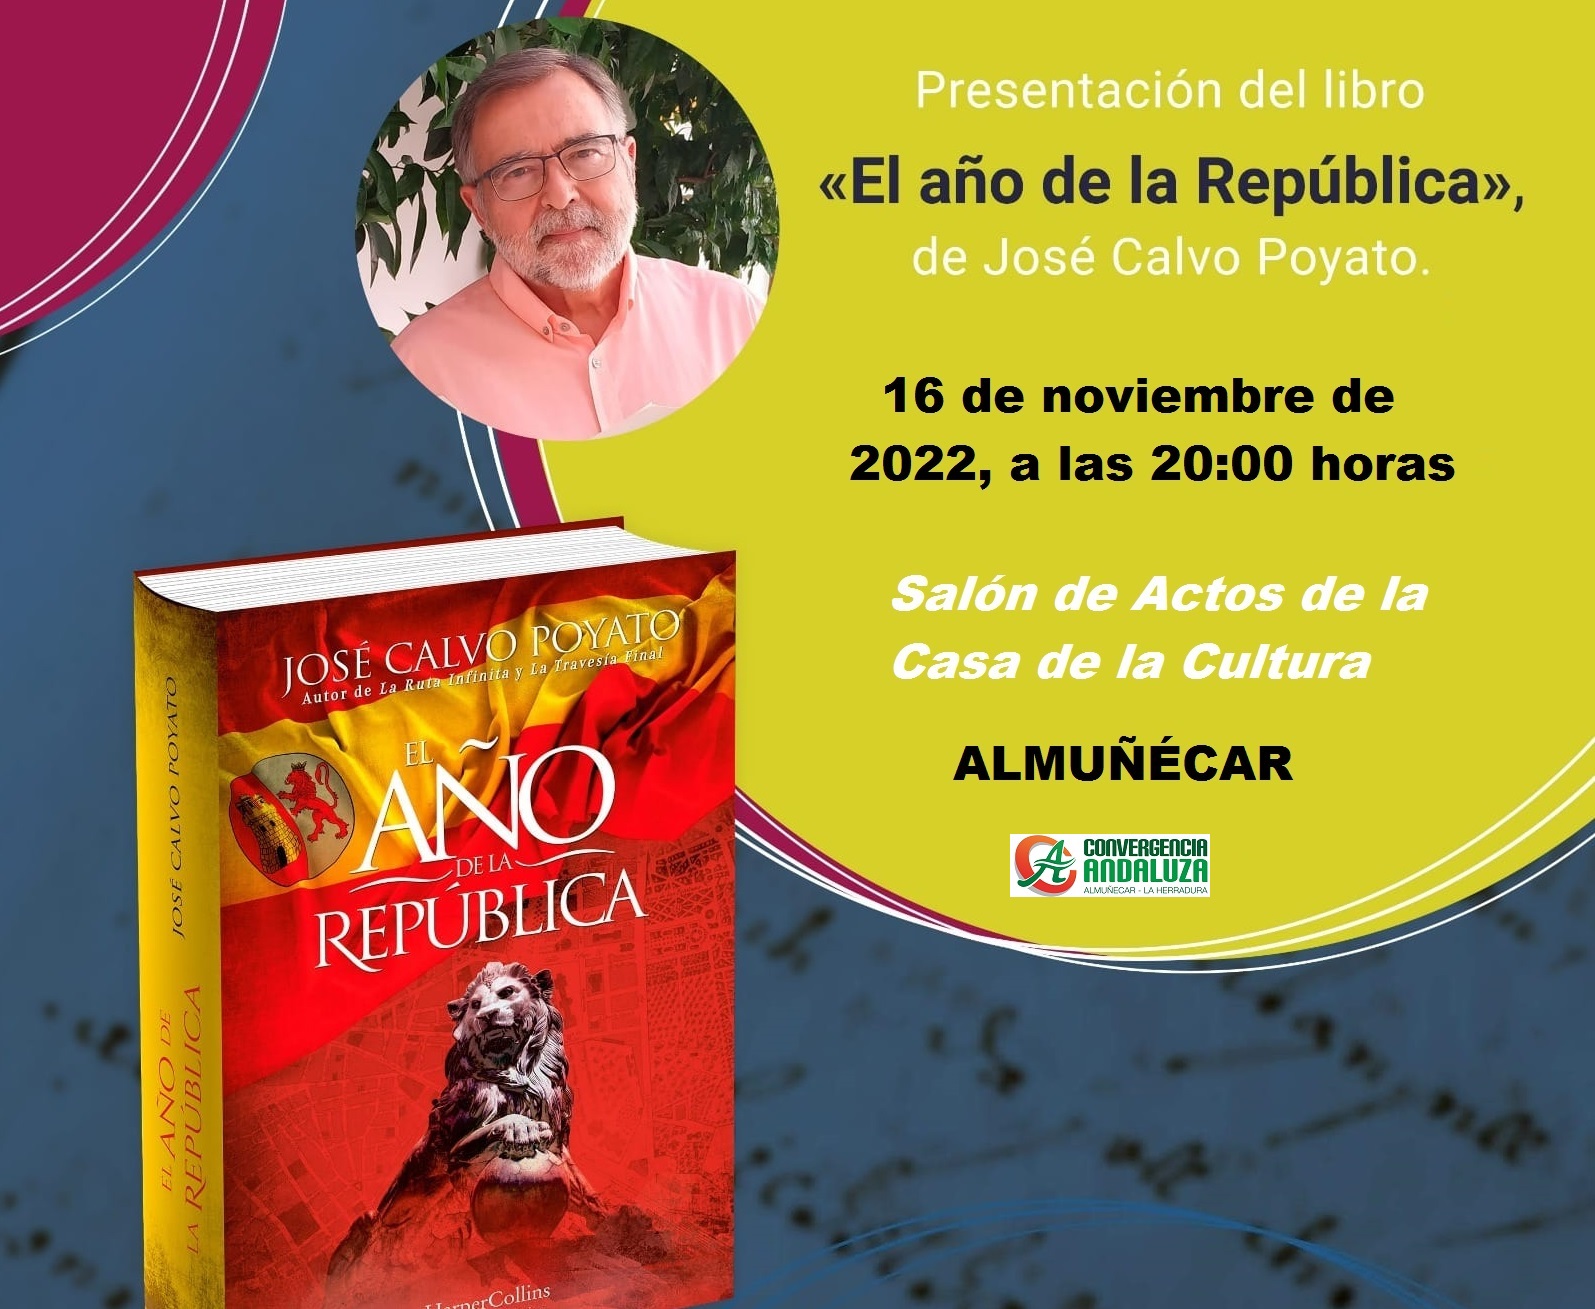 El escritor José Calvo Poyato presenta este miércoles en Almuñécar su última novela, “El año de la República”